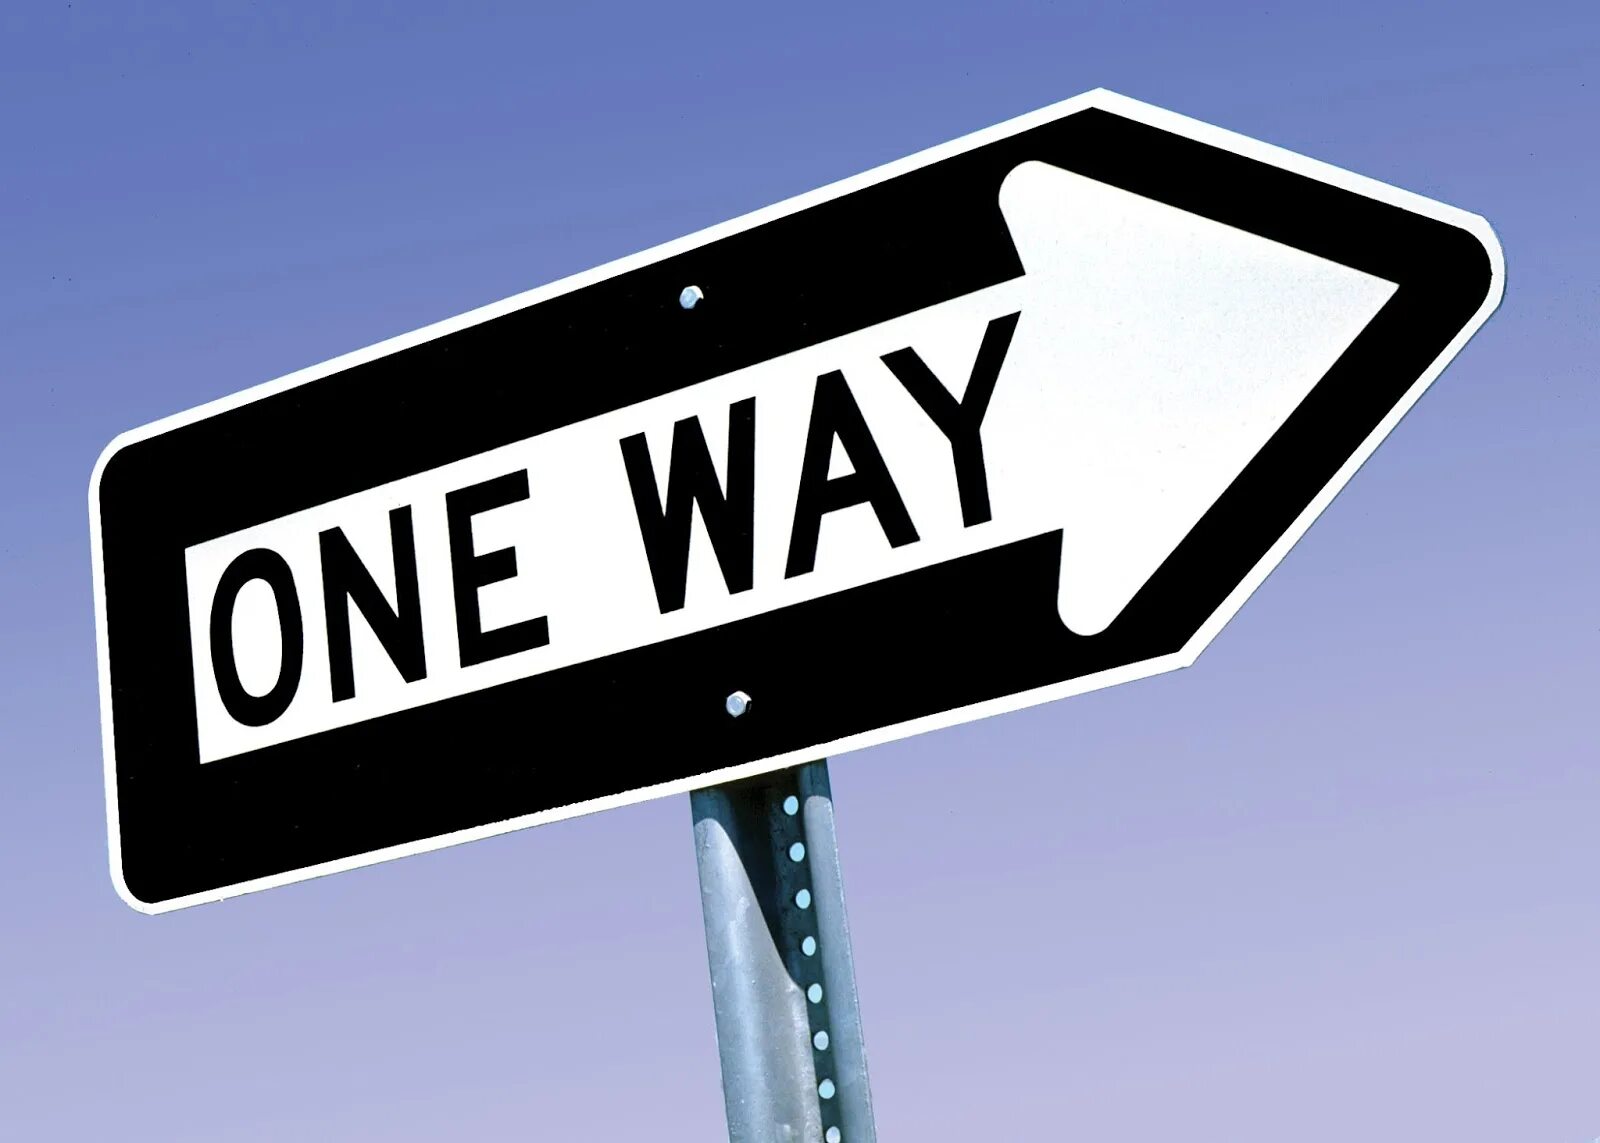 On one s way. One way указатель. One way USA знак. One way Road sign. One way знак дорожный.